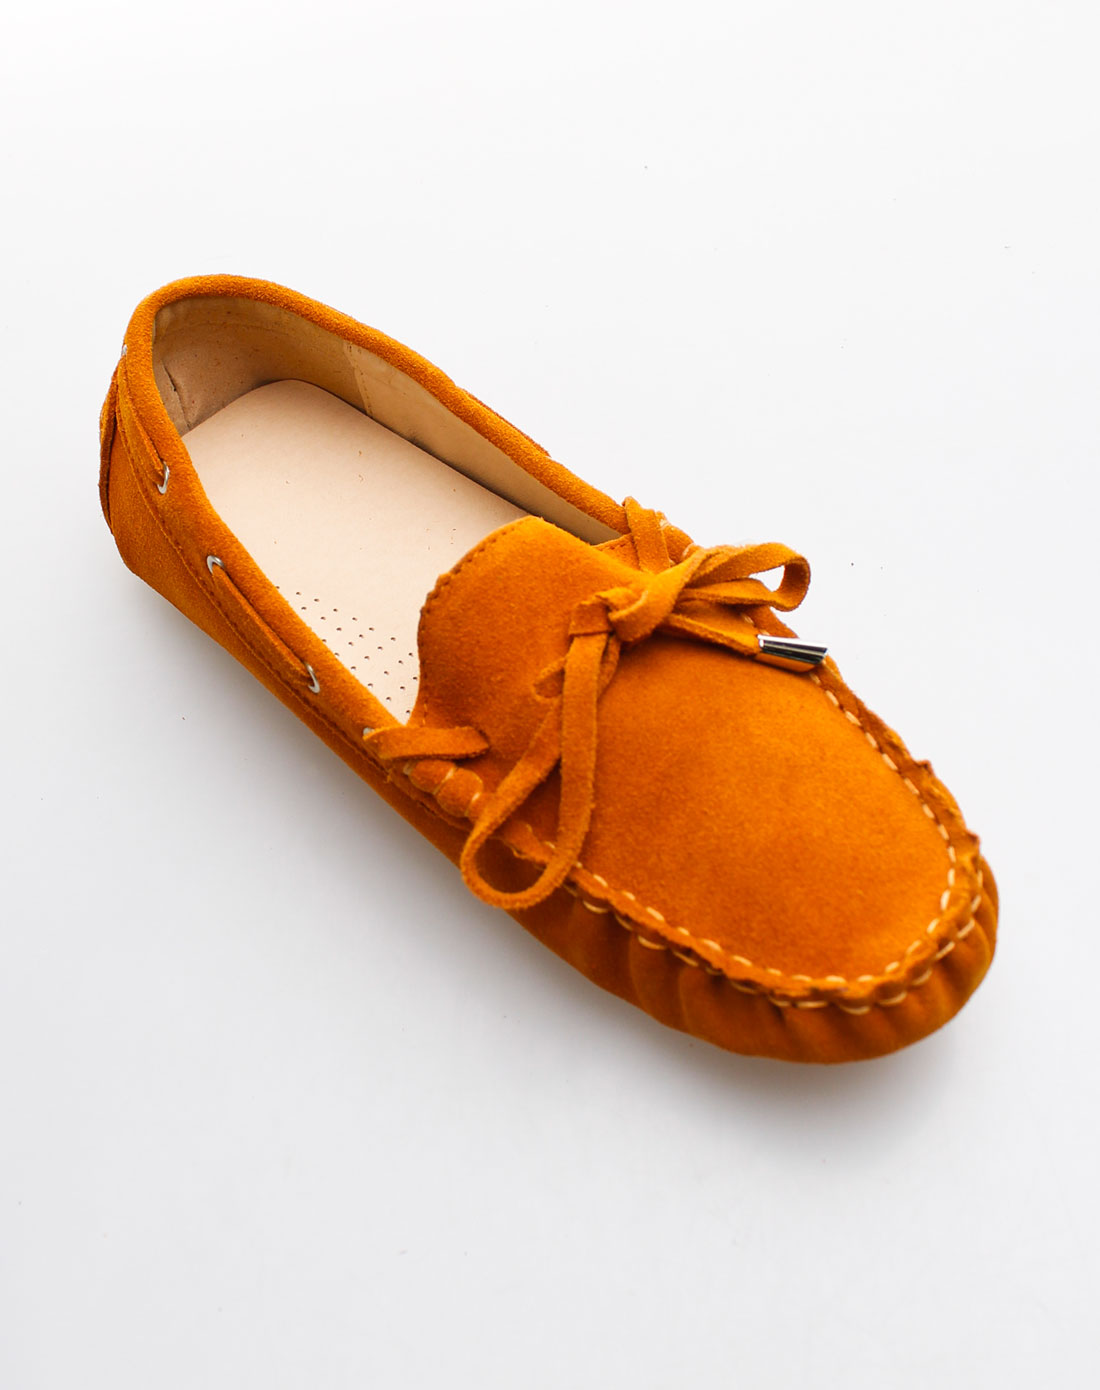 皮鞋橘子瓣图片